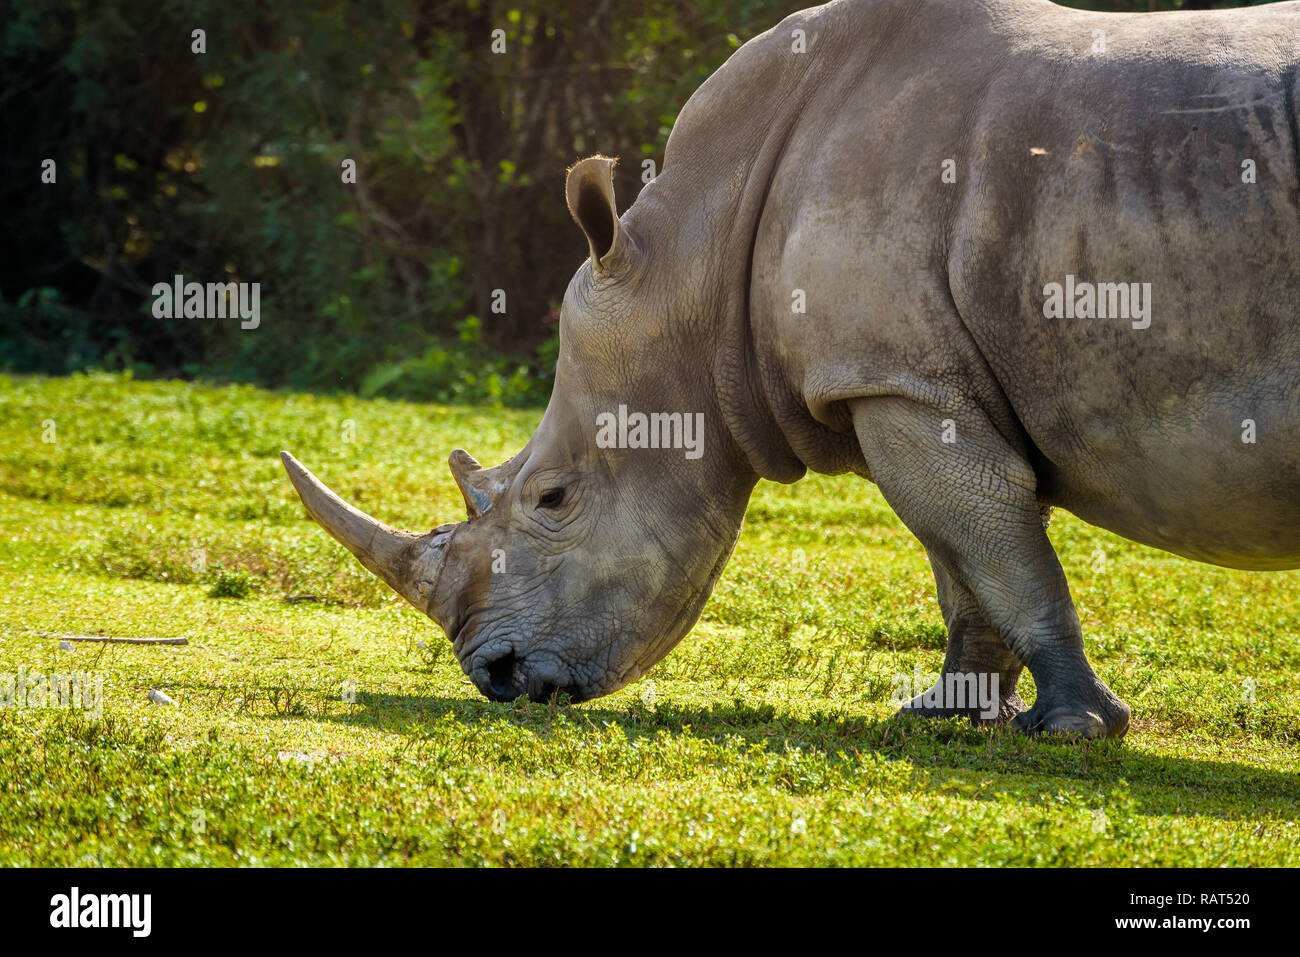 In prossimità di un grande rinoceronte bianco del Sud (Ceratotherium simum simum) di pascolare su erba verde Foto Stock